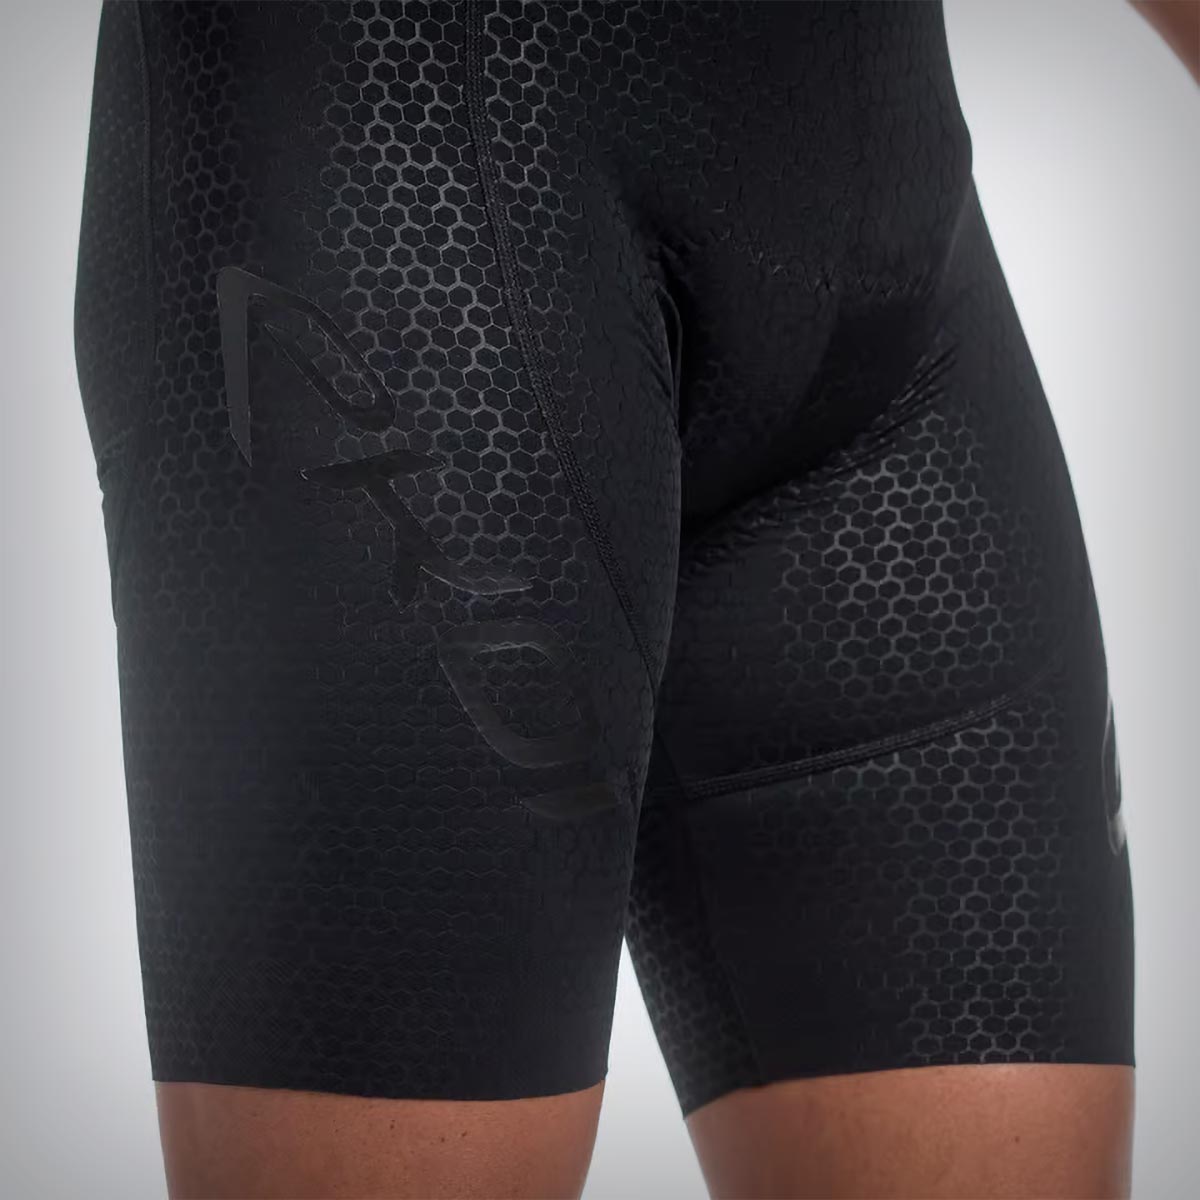 Ekoï 3D Gel Perf Hexa, un culotte con tejido de patrón hexagonal texturizado que mejora la aerodinámica